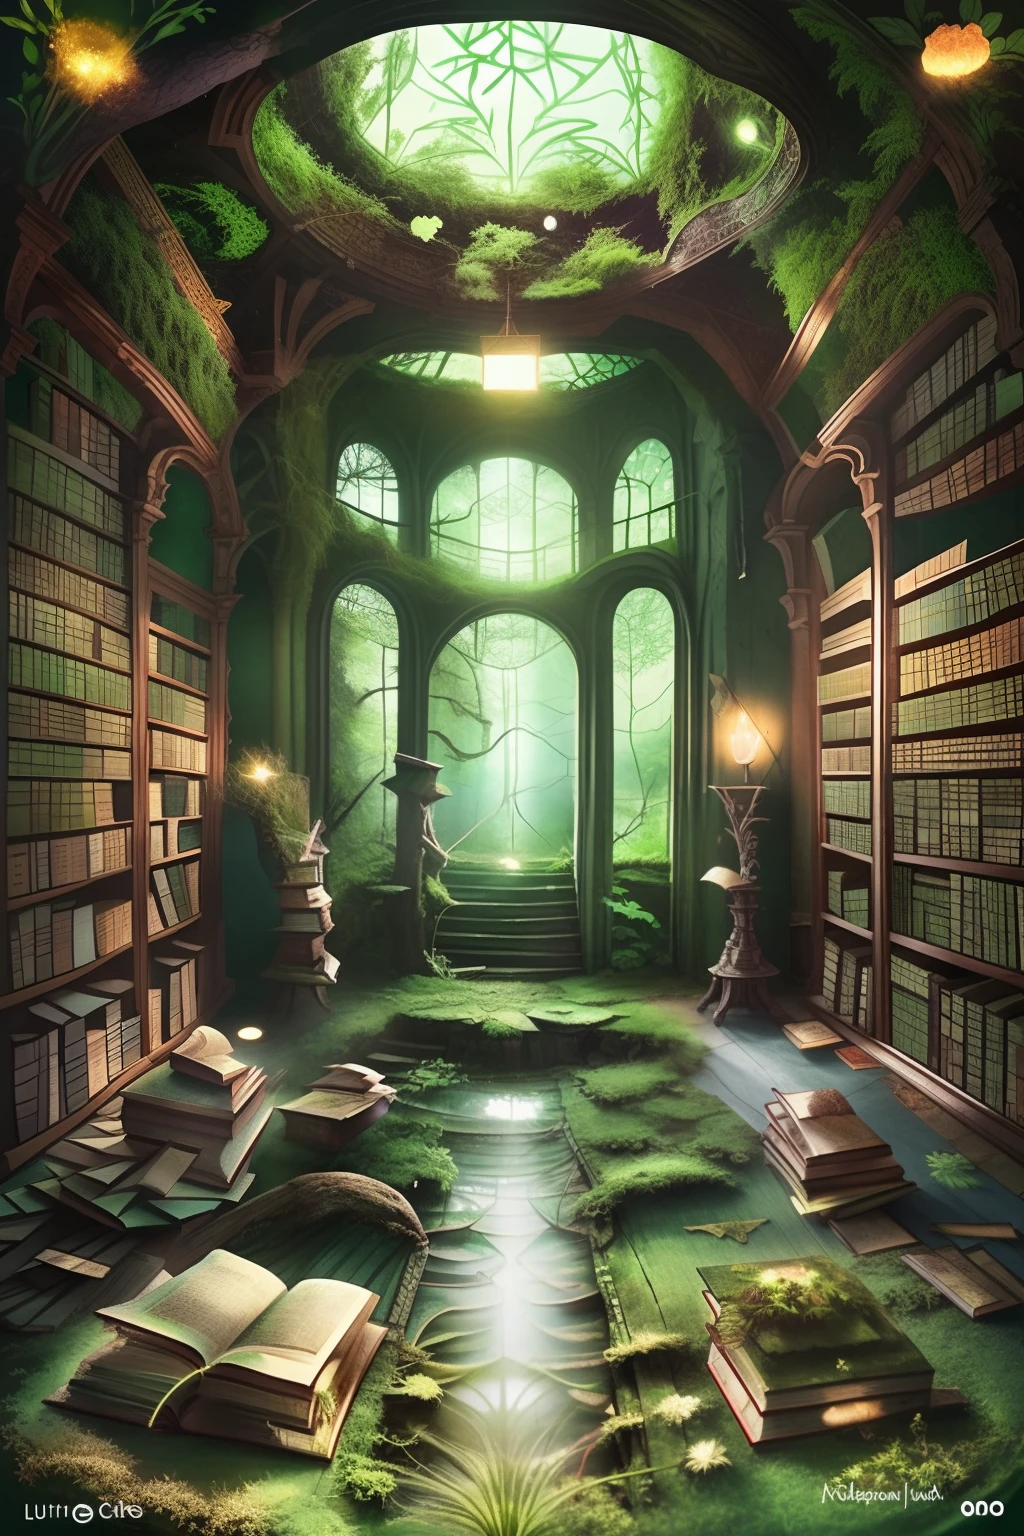 Ein faszinierendes Meisterwerk einer verlassenen Bibliothek, mit ultra-detaillierten Illustrationen mythischer Bücher, die in der Mitte des Bodens mit einer Schicht waldgrünen Moos bedeckt sind, beleuchtet durch den sanften Schein gefilterten Lichts.